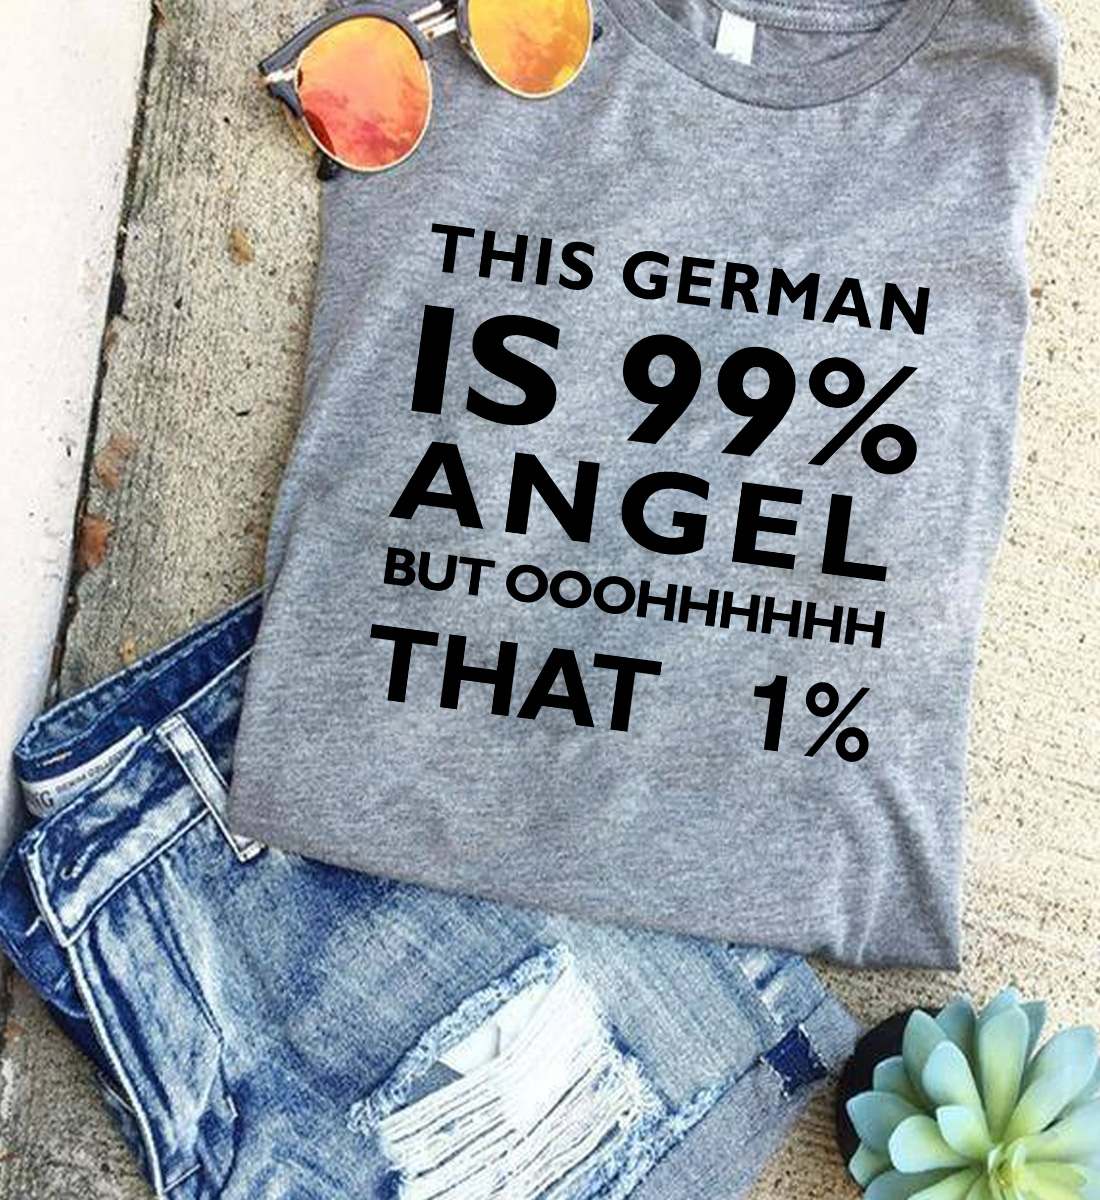 This German is 99% angel but ooohhhhh that 1% - German people